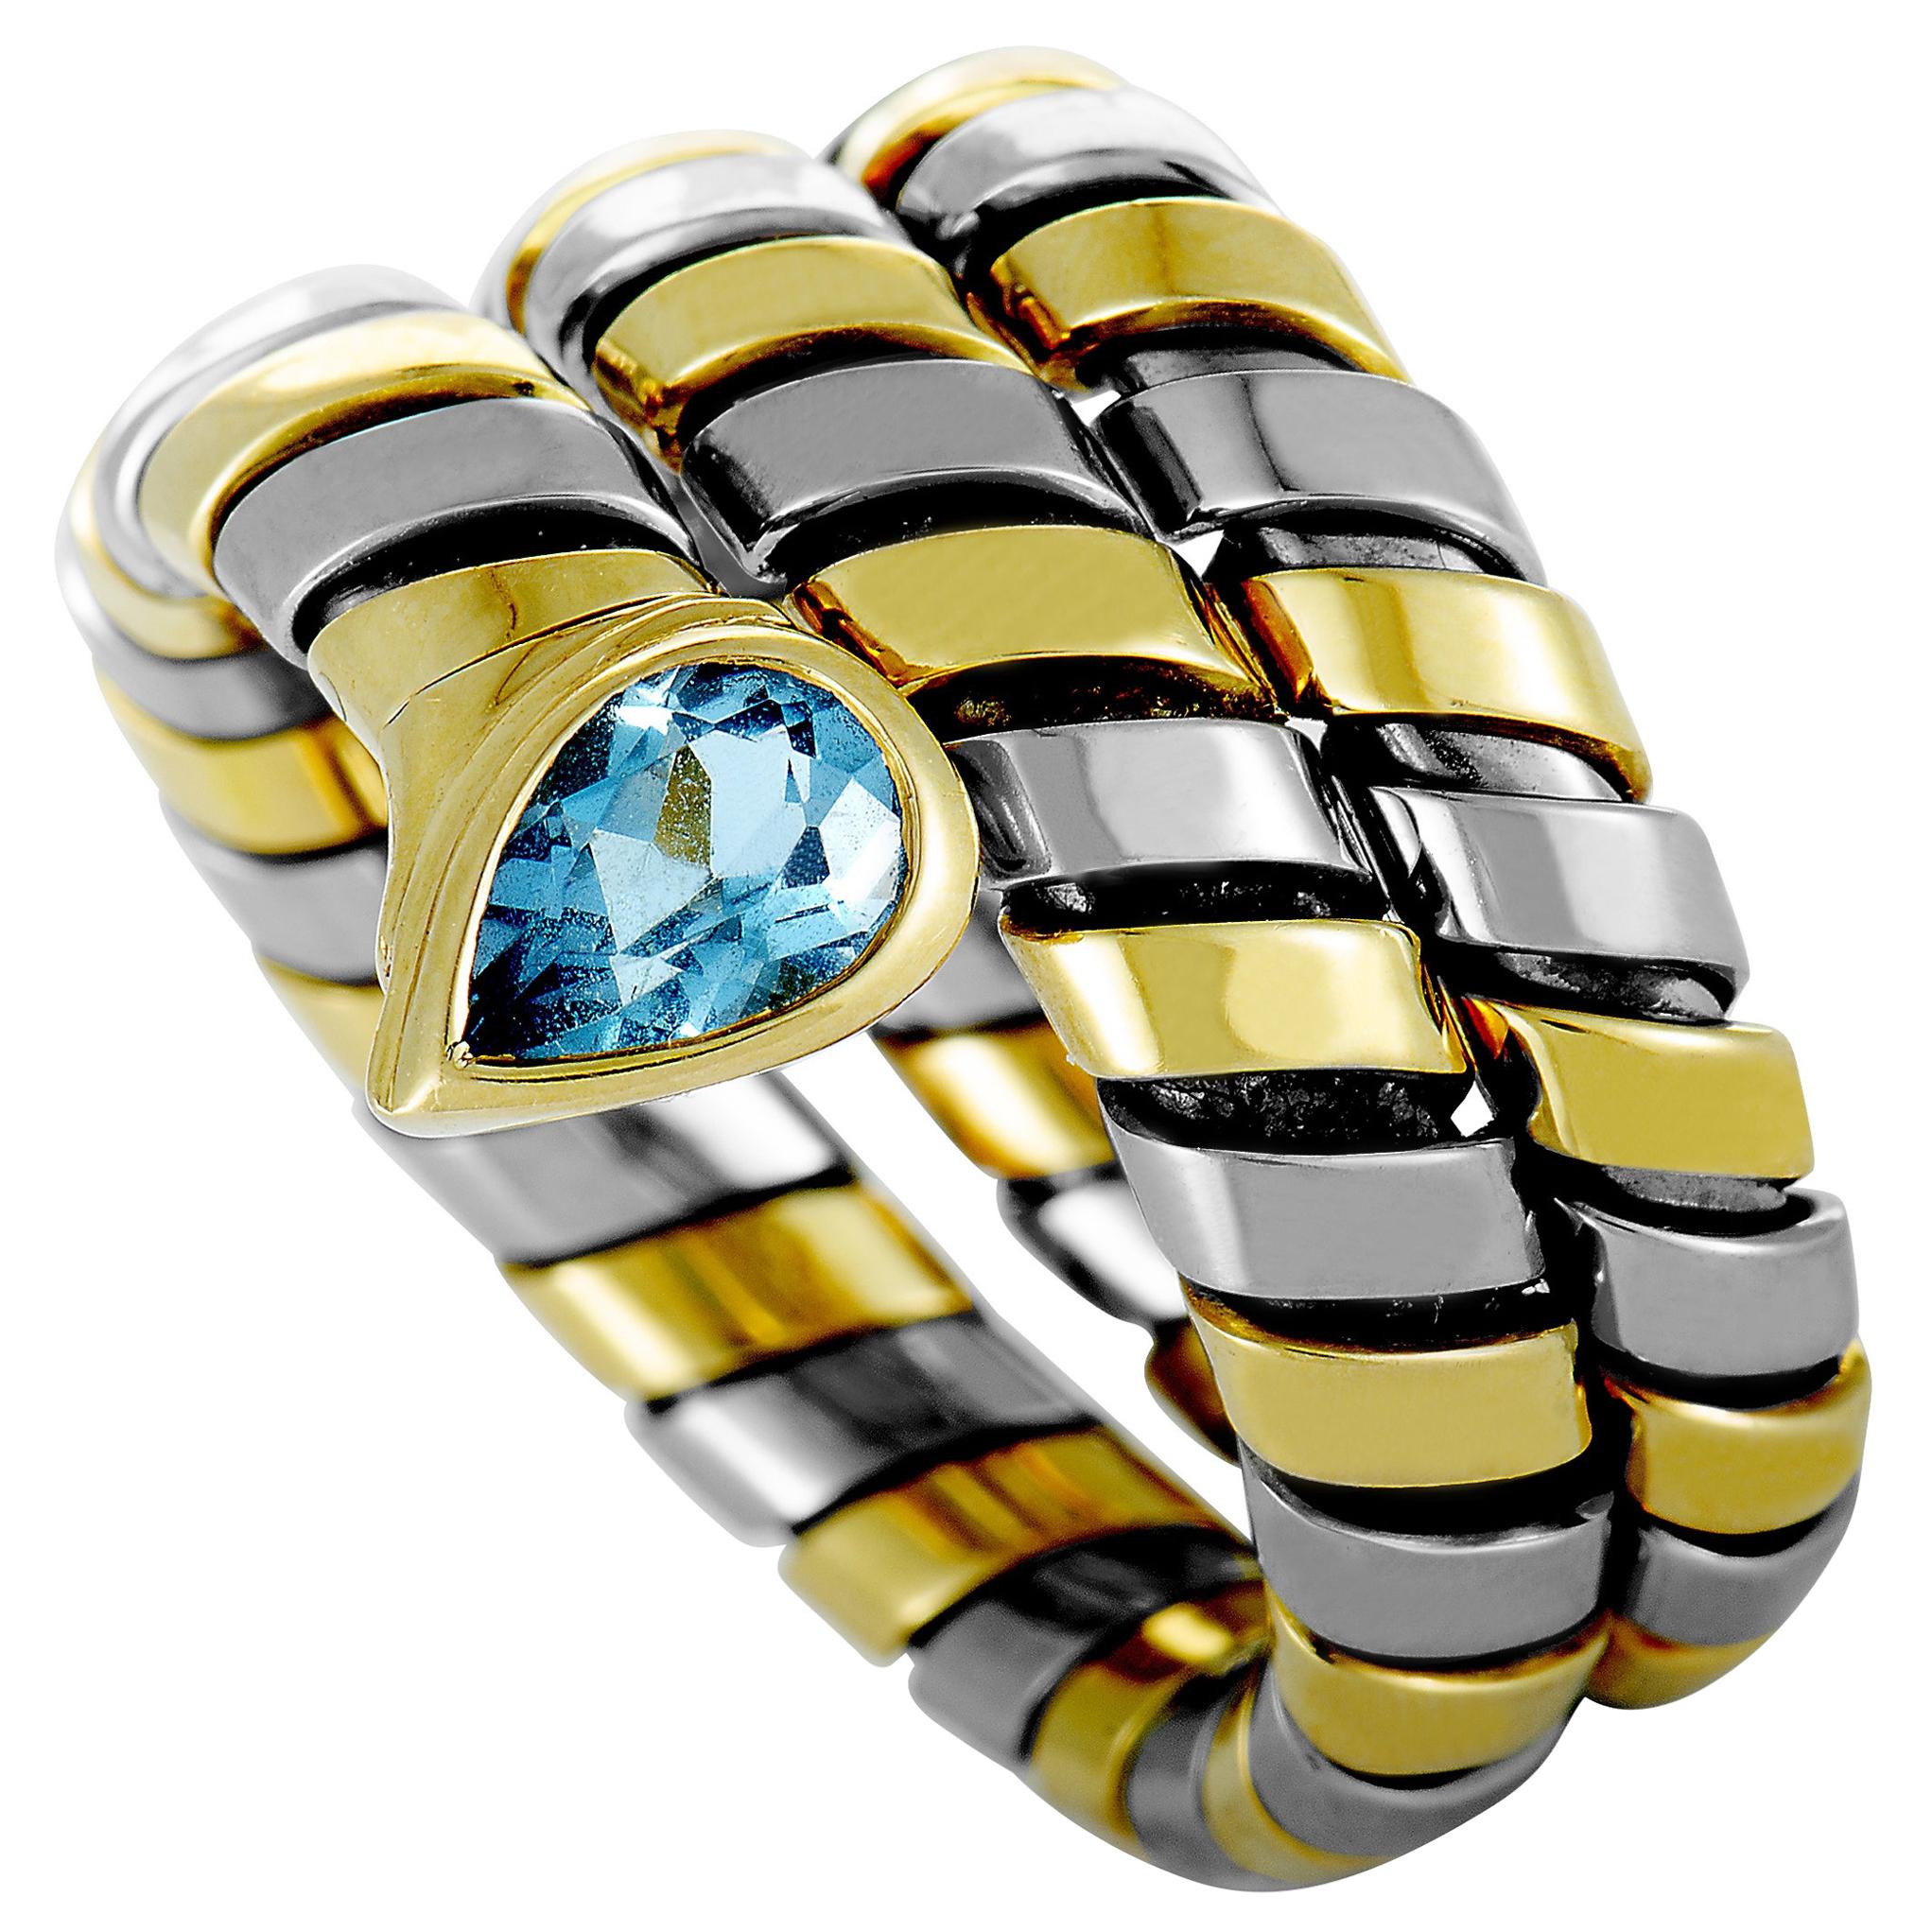 Bvlgari Serpenti Tubogas 18 Karat Gold and Stainless Steel Topaz Spiral Ring